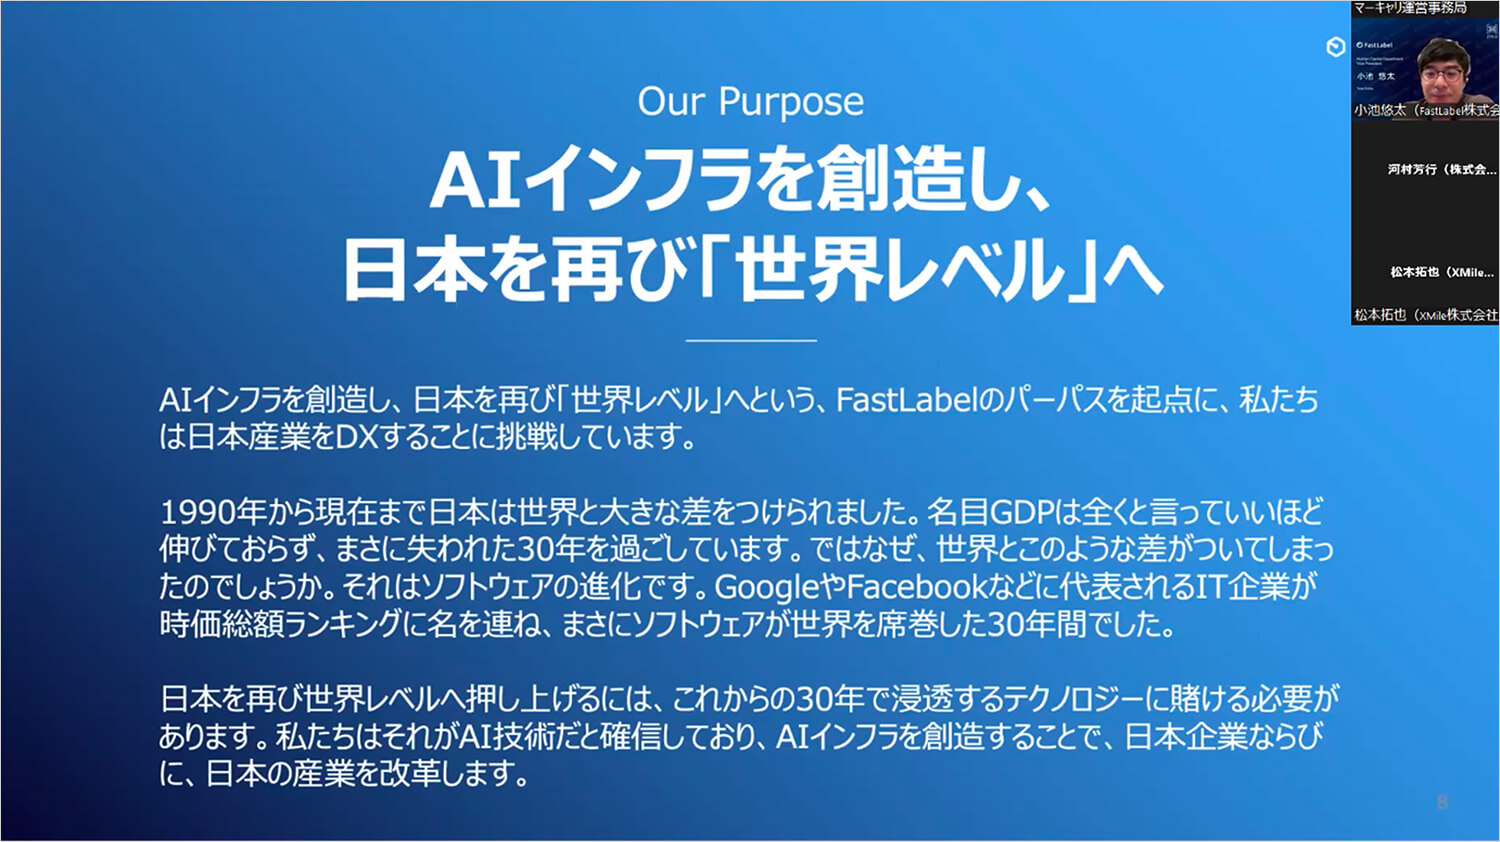 FastLabelのPurpose『AIインフラを創造し、日本を再び「世界レベル」へ』